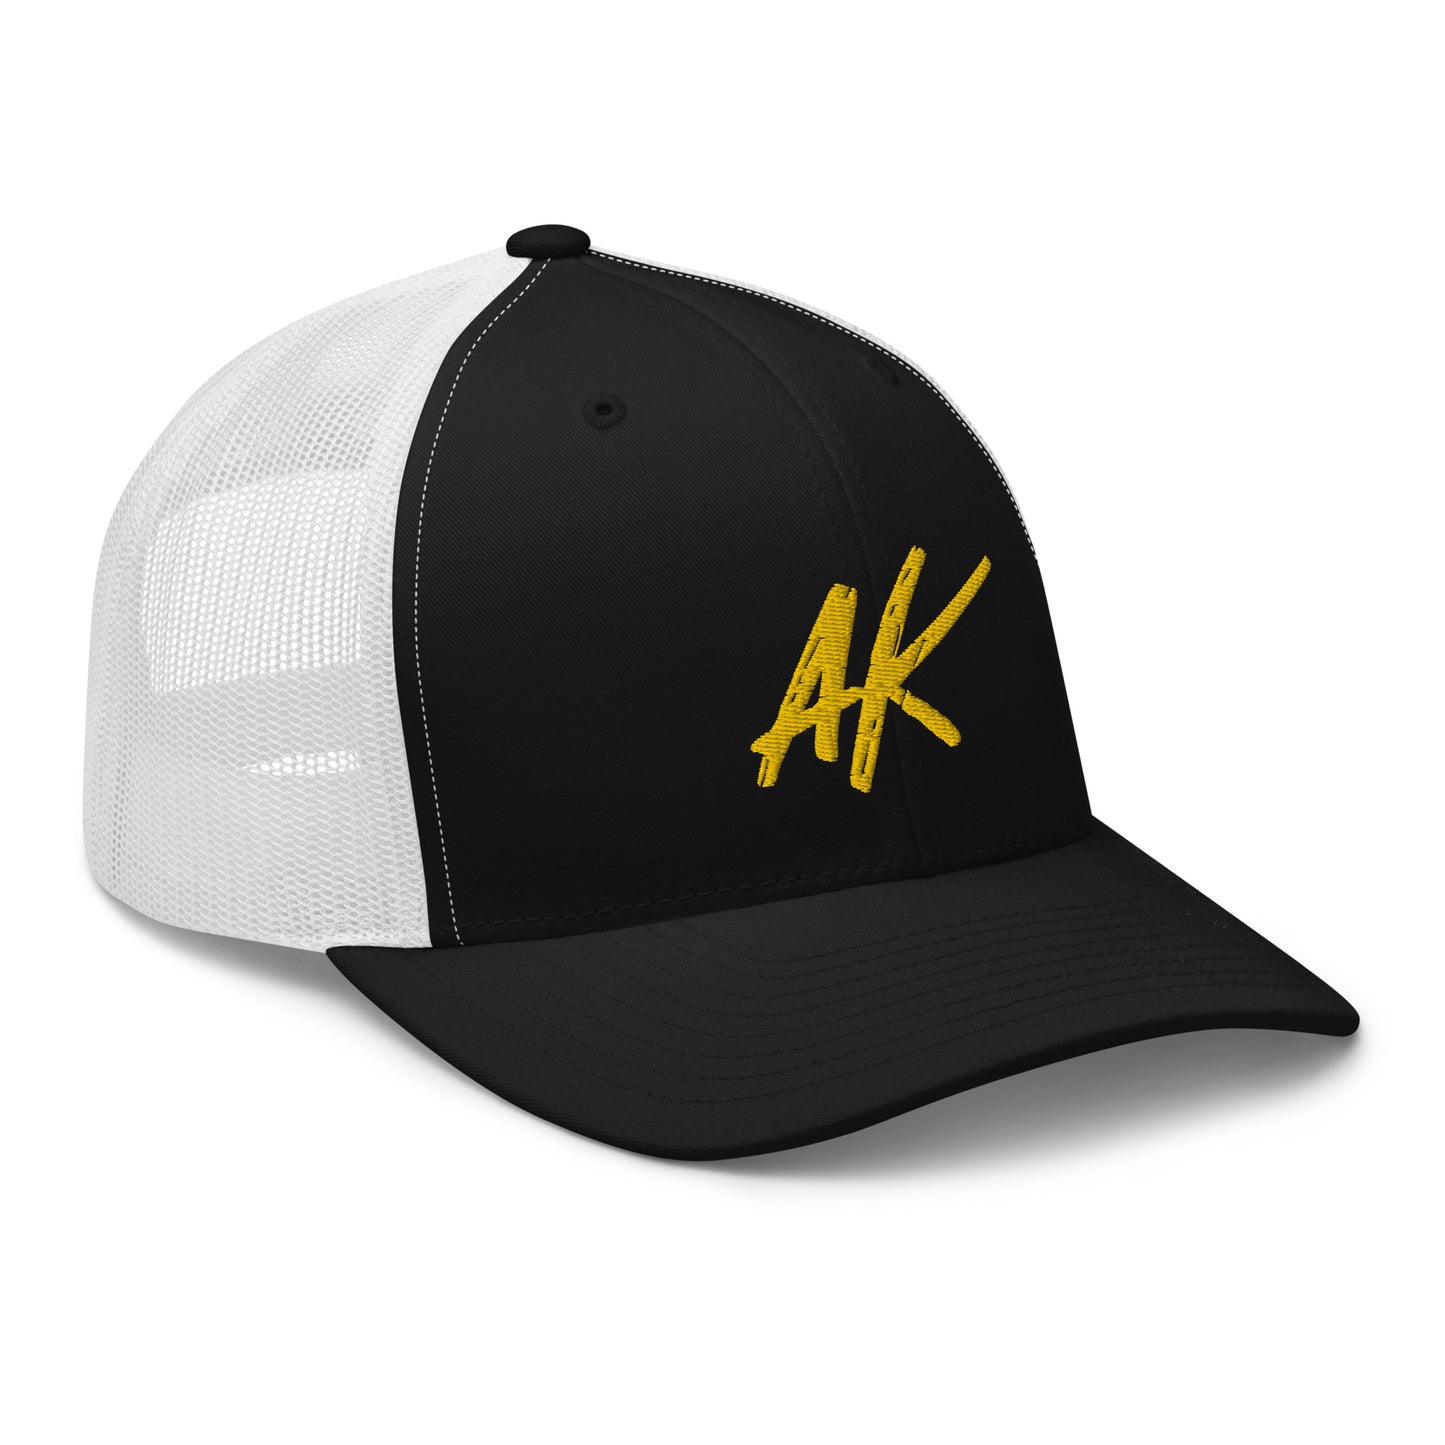 AK snapback (gold)